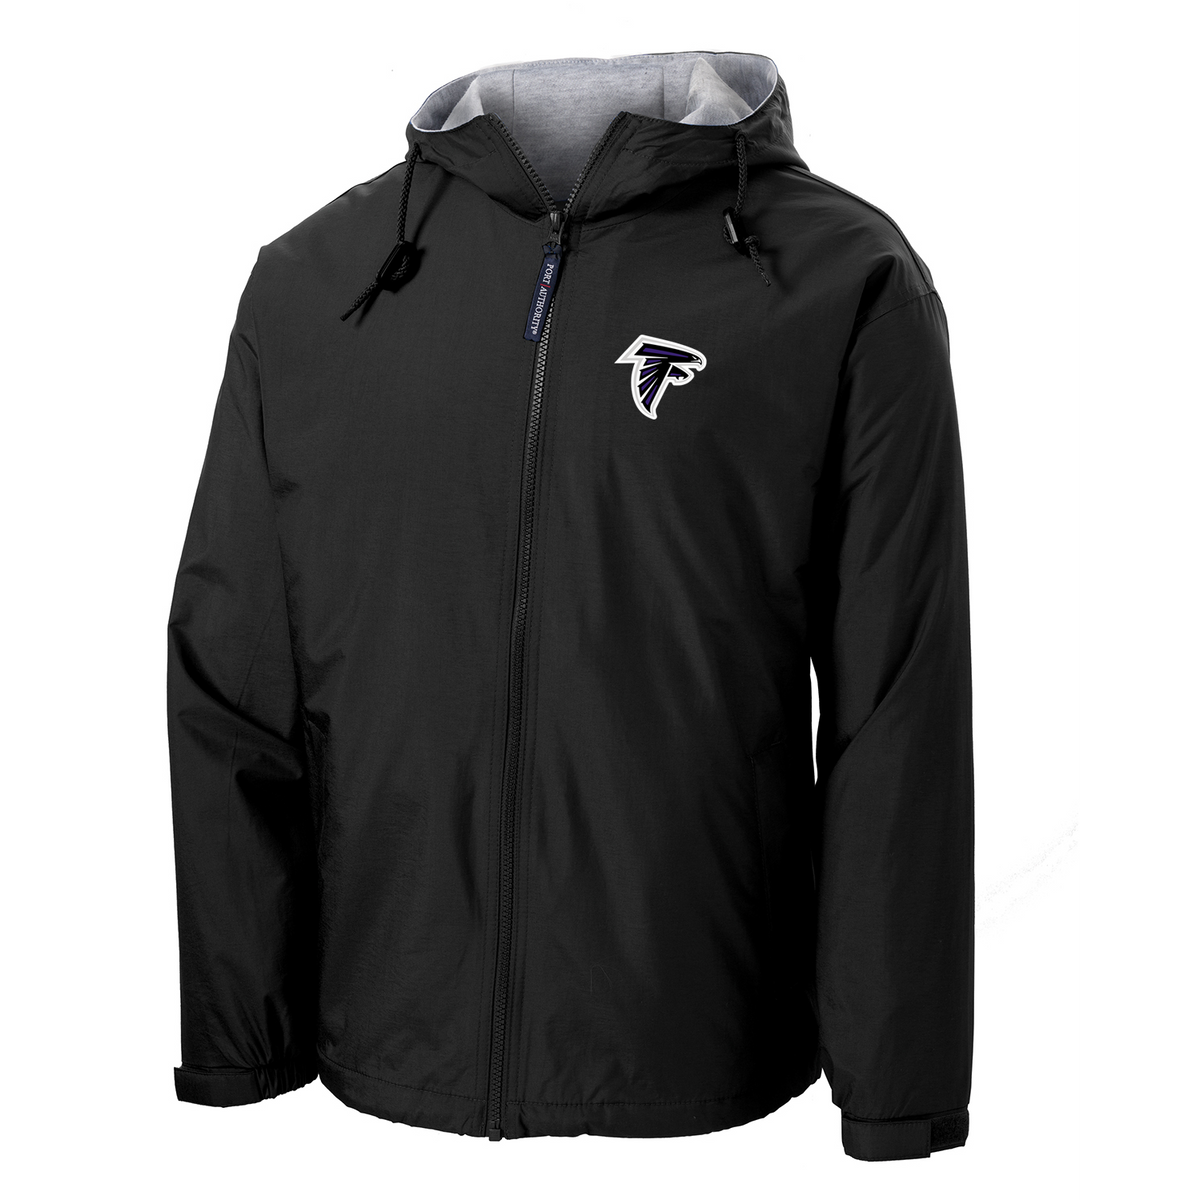 Lombard Falcons Hooded Jacket